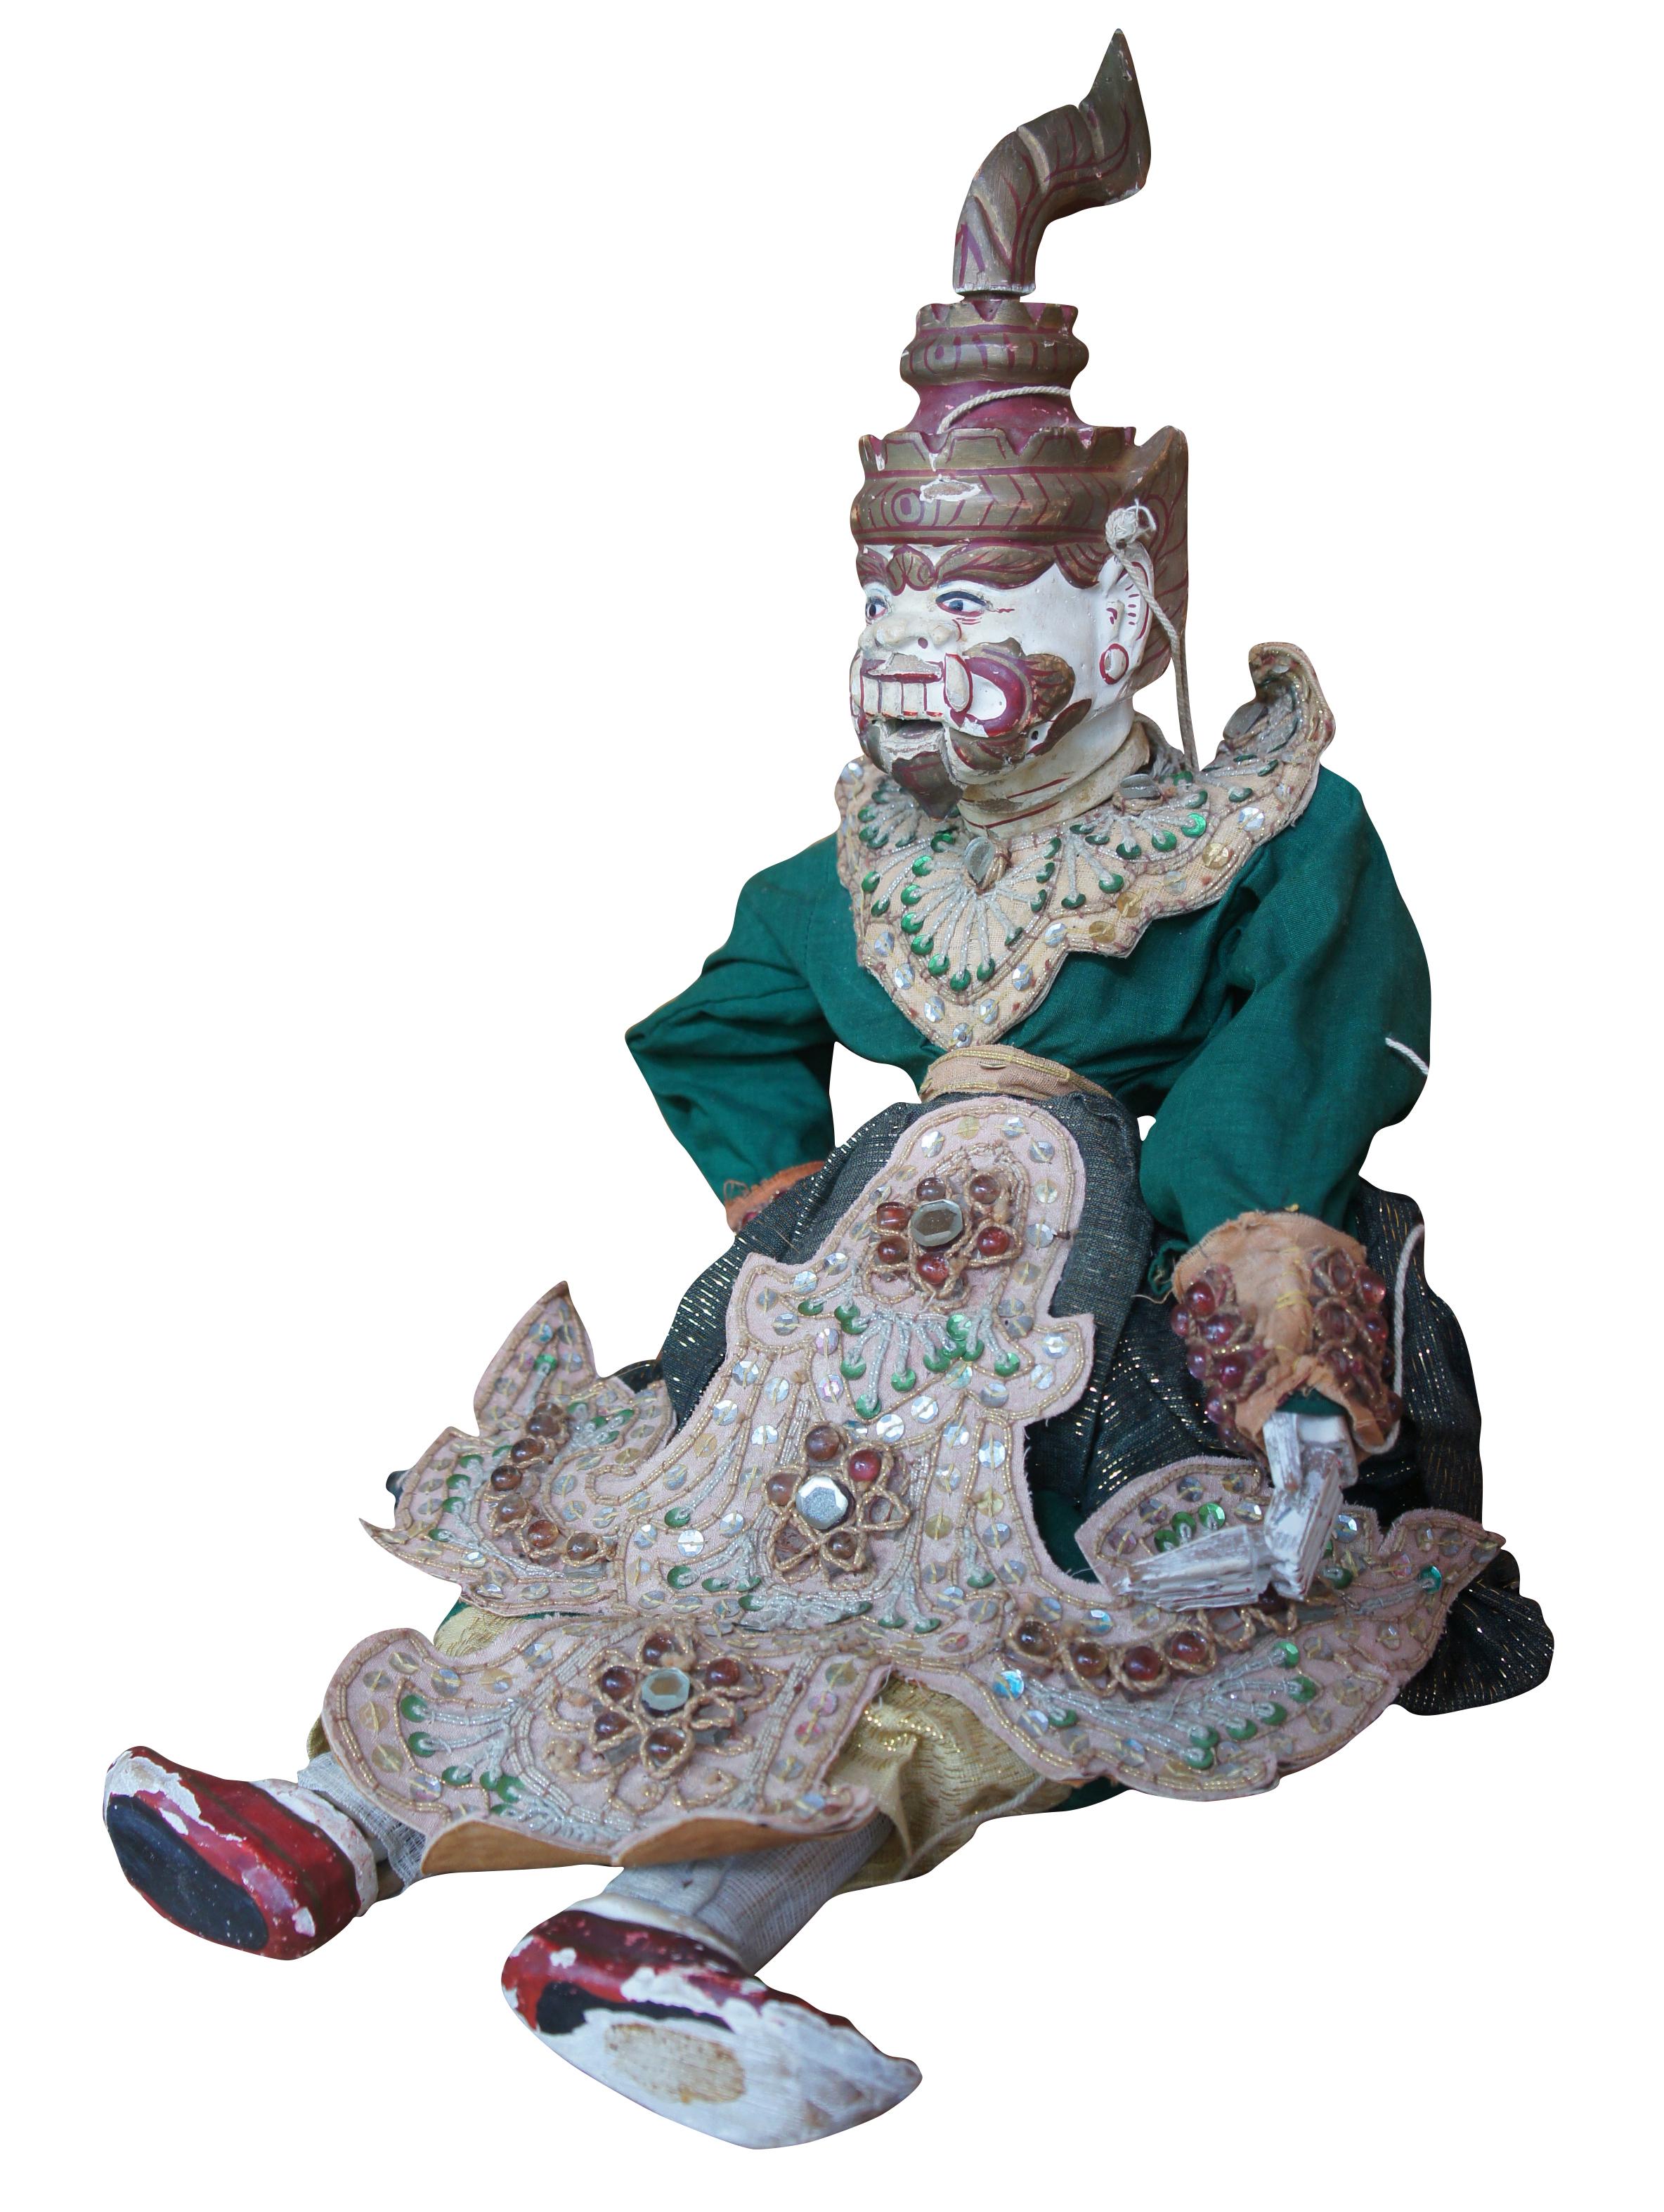 Ancienne marionnette à fils sculptée Thai Burmese Ramayana Warrior. Fabriqués à la main à partir de bois, ces vêtements sont ornés de perles.
 